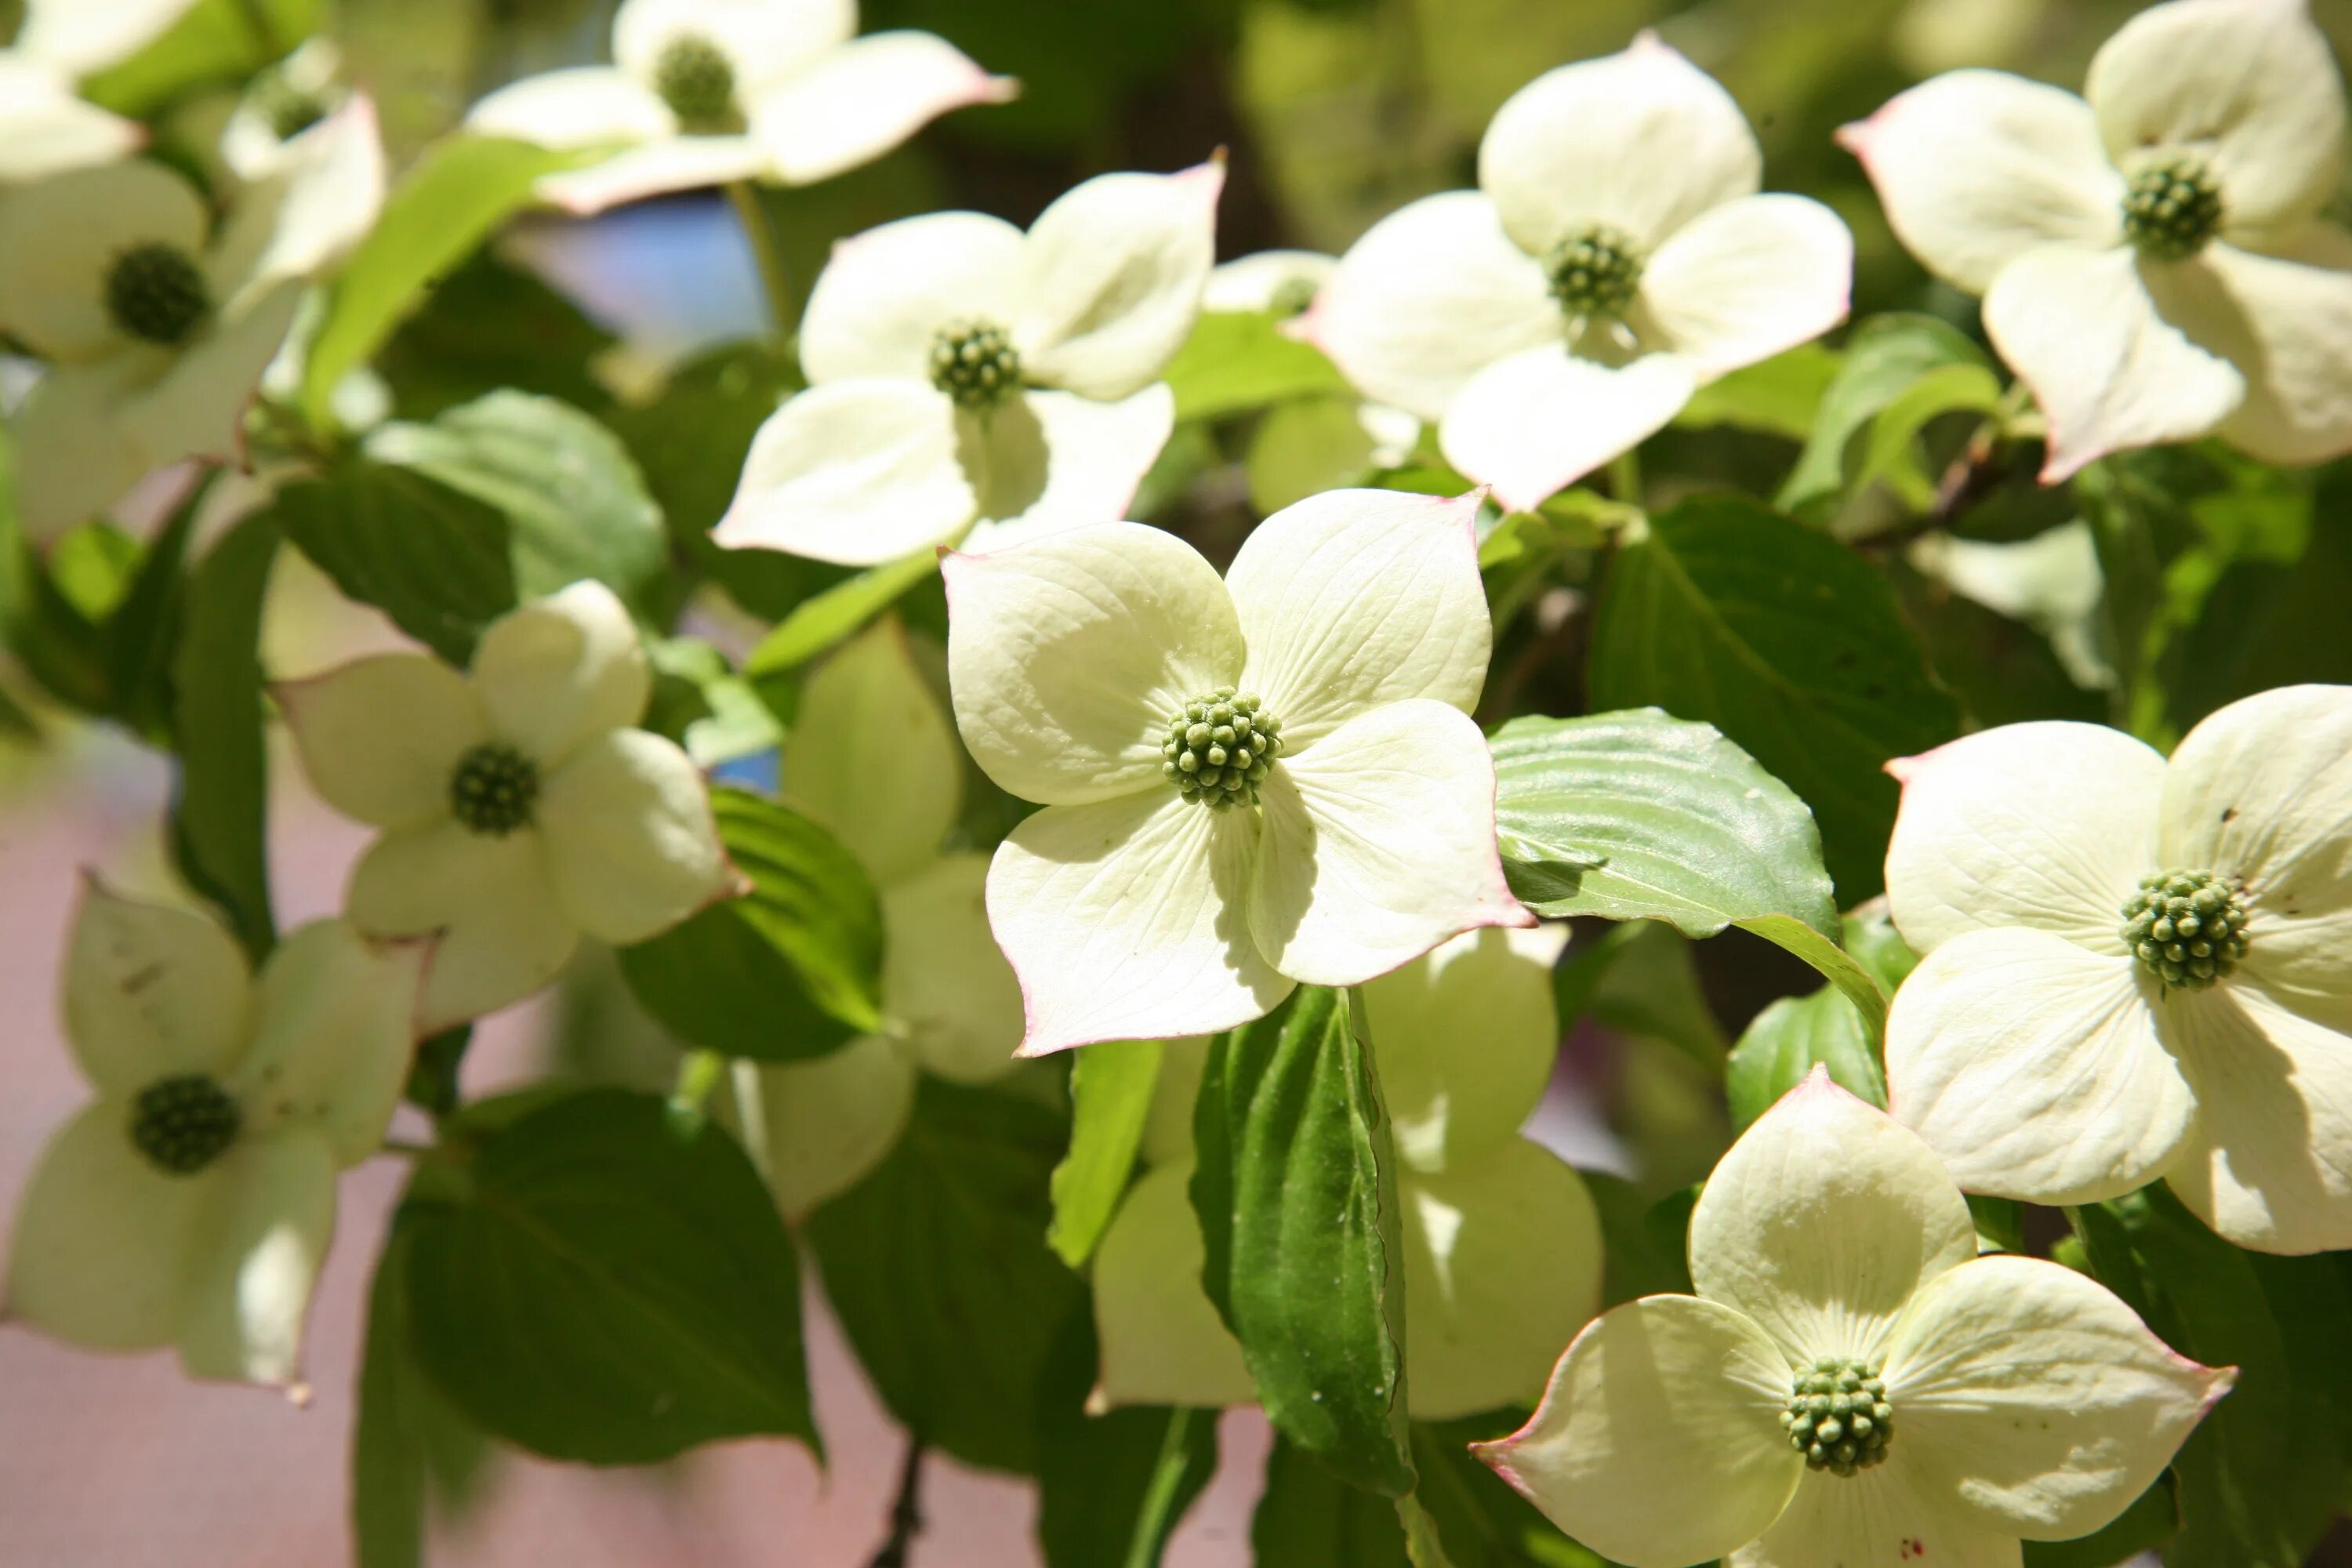 Куст с белыми цветами 4. Flowering Dogwood растение. Цветок четыре лепестка белый. Белый цветок с 4 лепестками. Кустарник с белыми цветочками четыре лепестка.